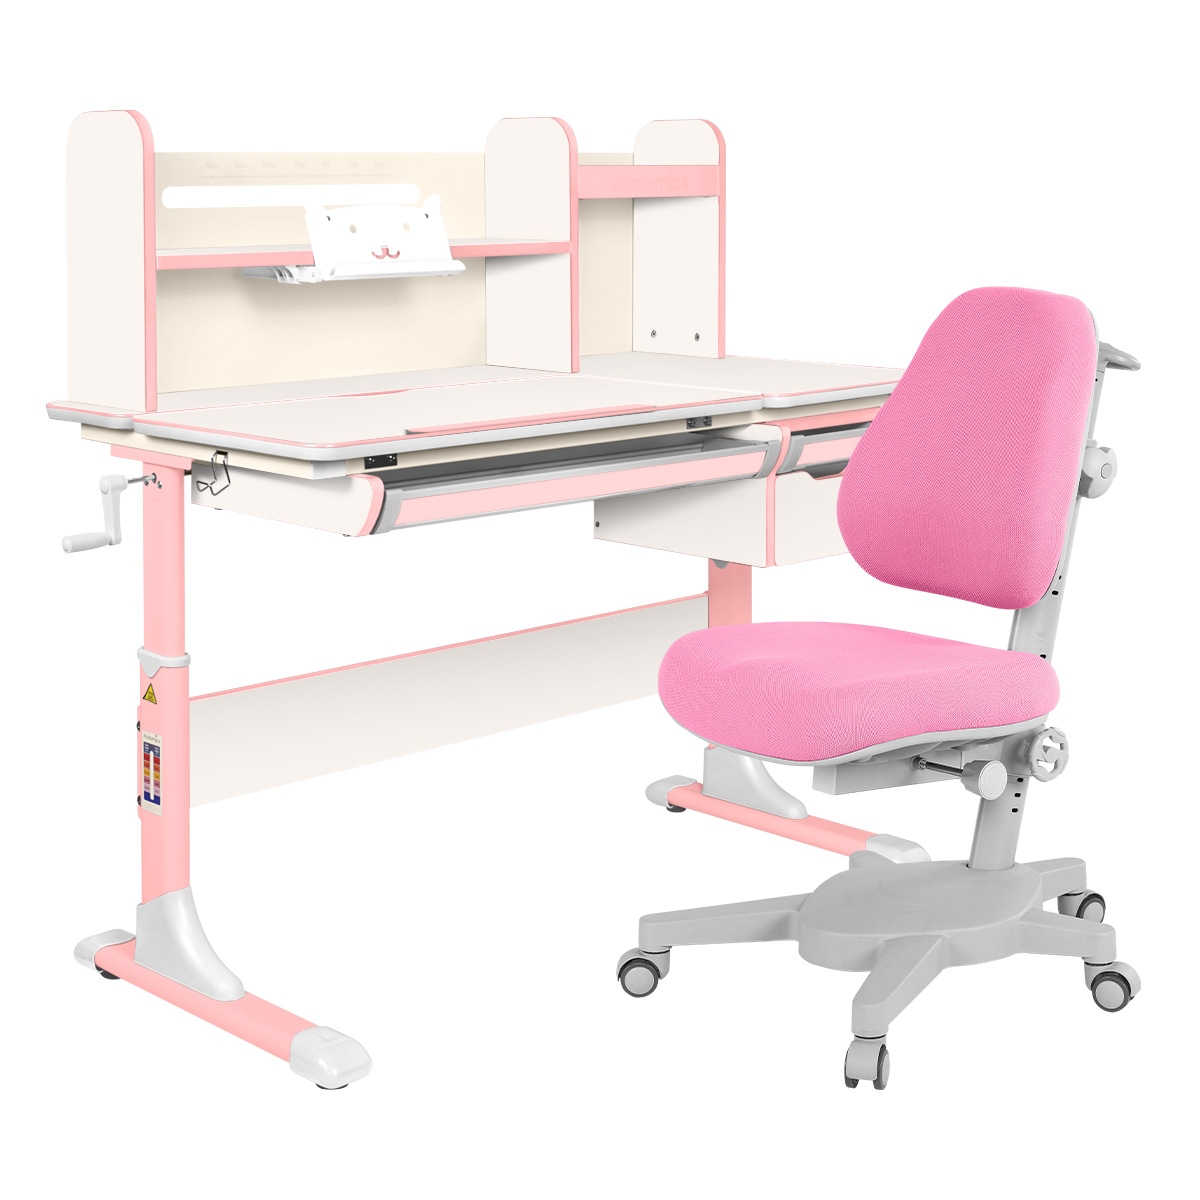 Комплект Anatomica парта Genius белый/розовый с розовым креслом Armata комплект anatomica парта genius белый серый с мятным креслом armata